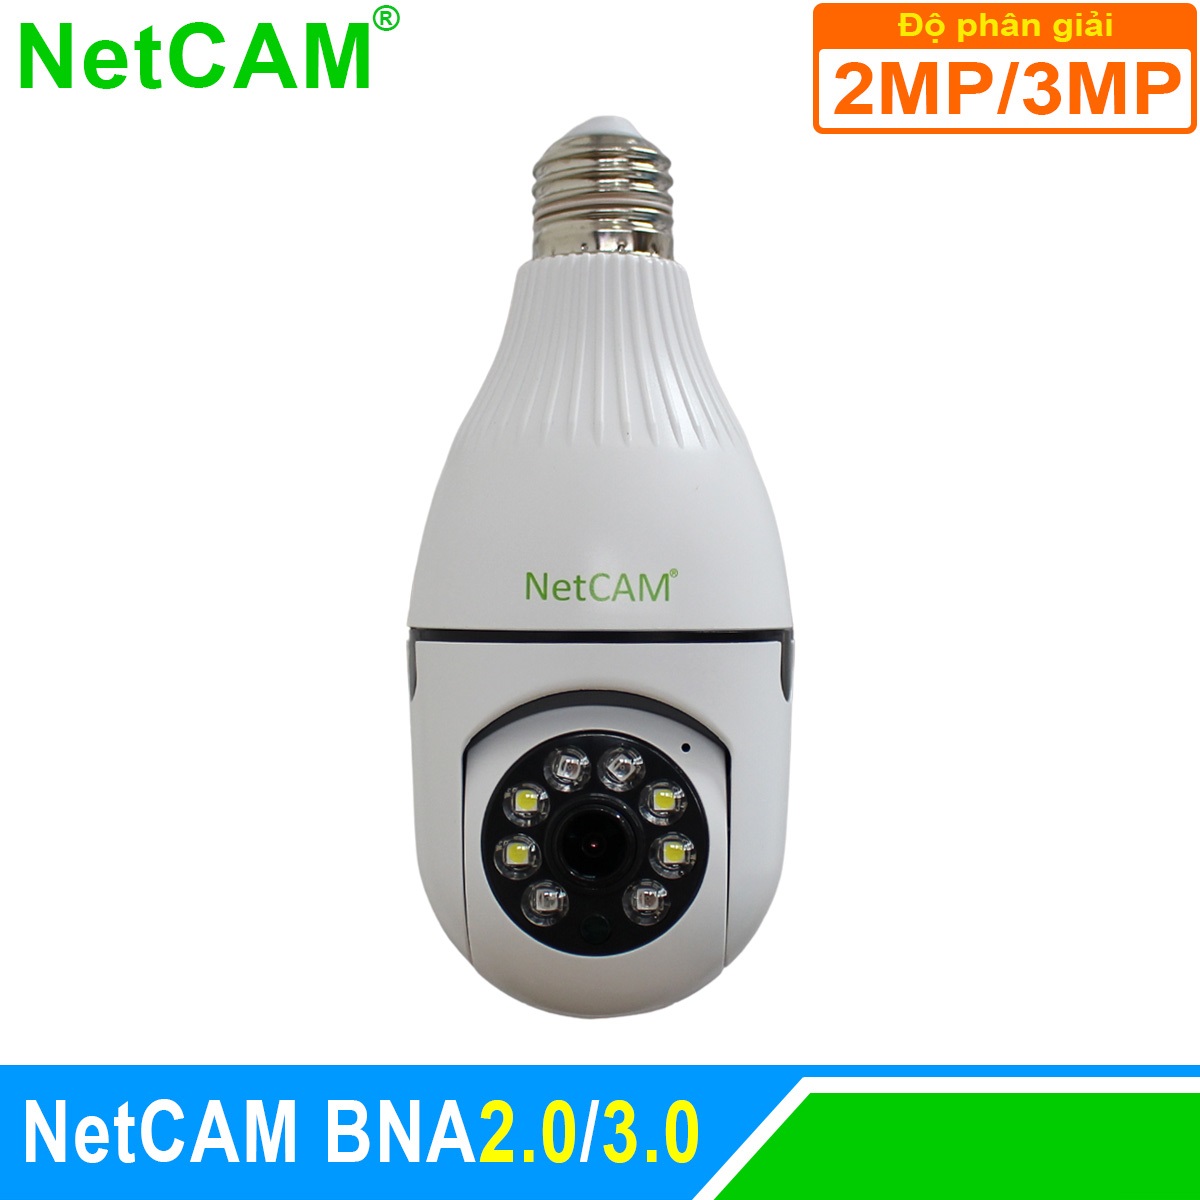 Camera IP WiFi Giám Sát An Ninh NetCAM BNA2.0 / 3.0, Quay quét 360 độ, Độ phân giải 2.0MP và 3.0MP - Hàng Chính Hãng